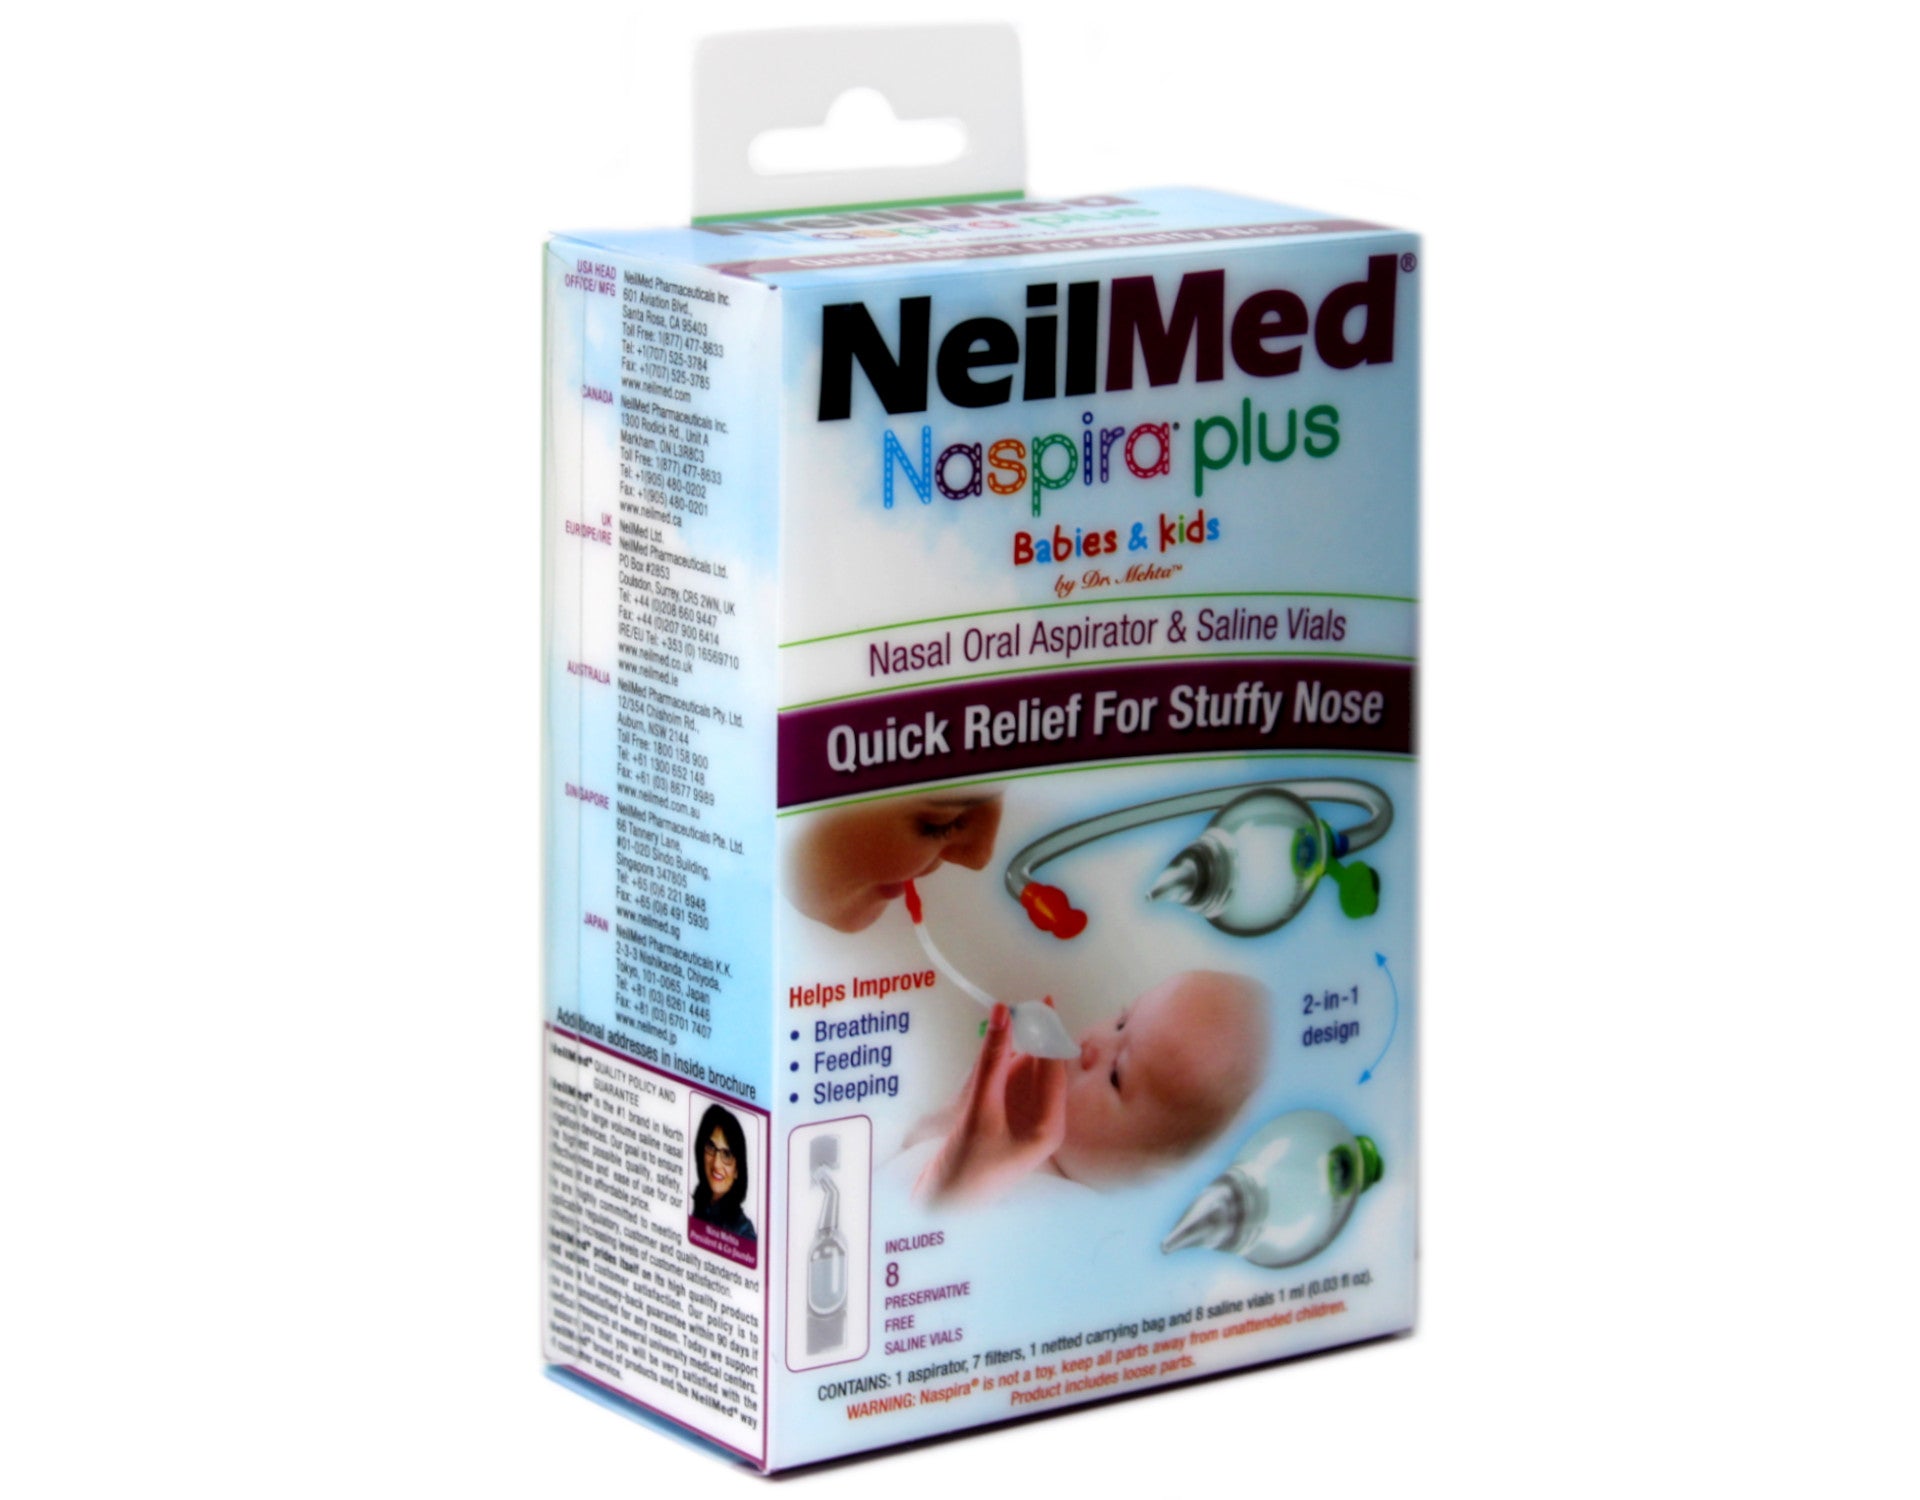 NeilMed Nasal-Oral Aspirator, Naspira,1ea